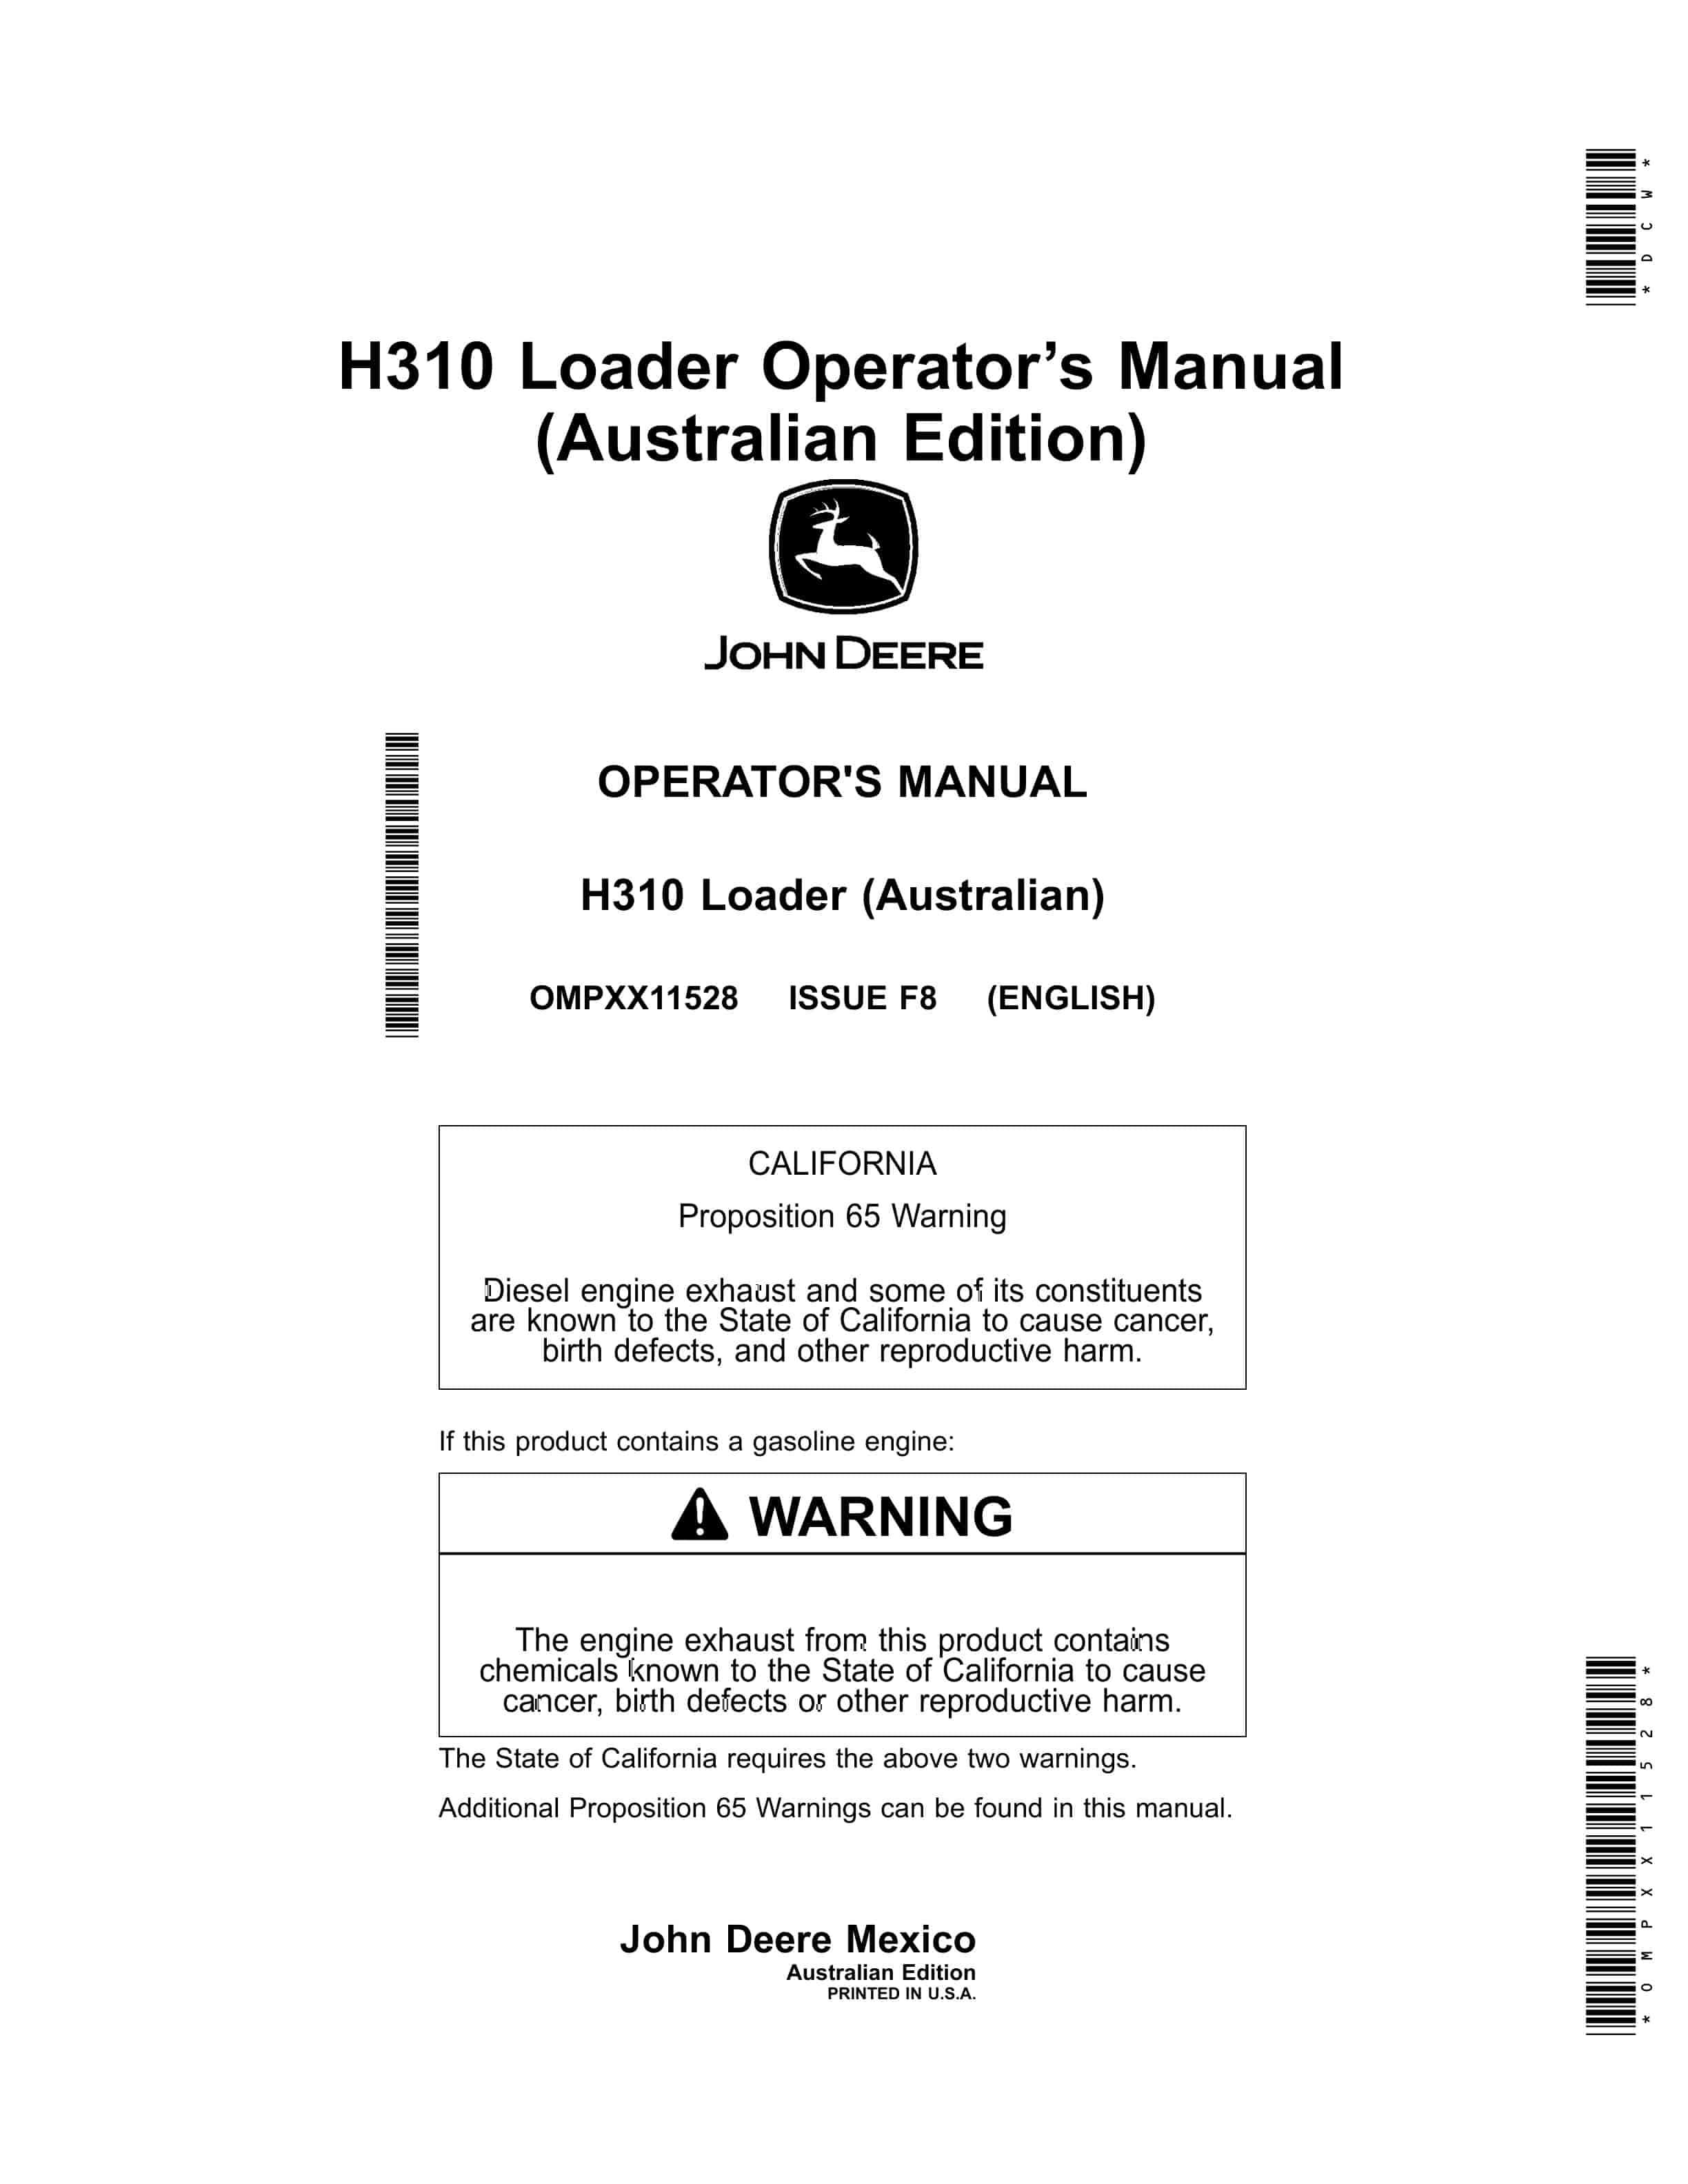 John Deere H310 Loader Operator Manual OMPXX11528 1